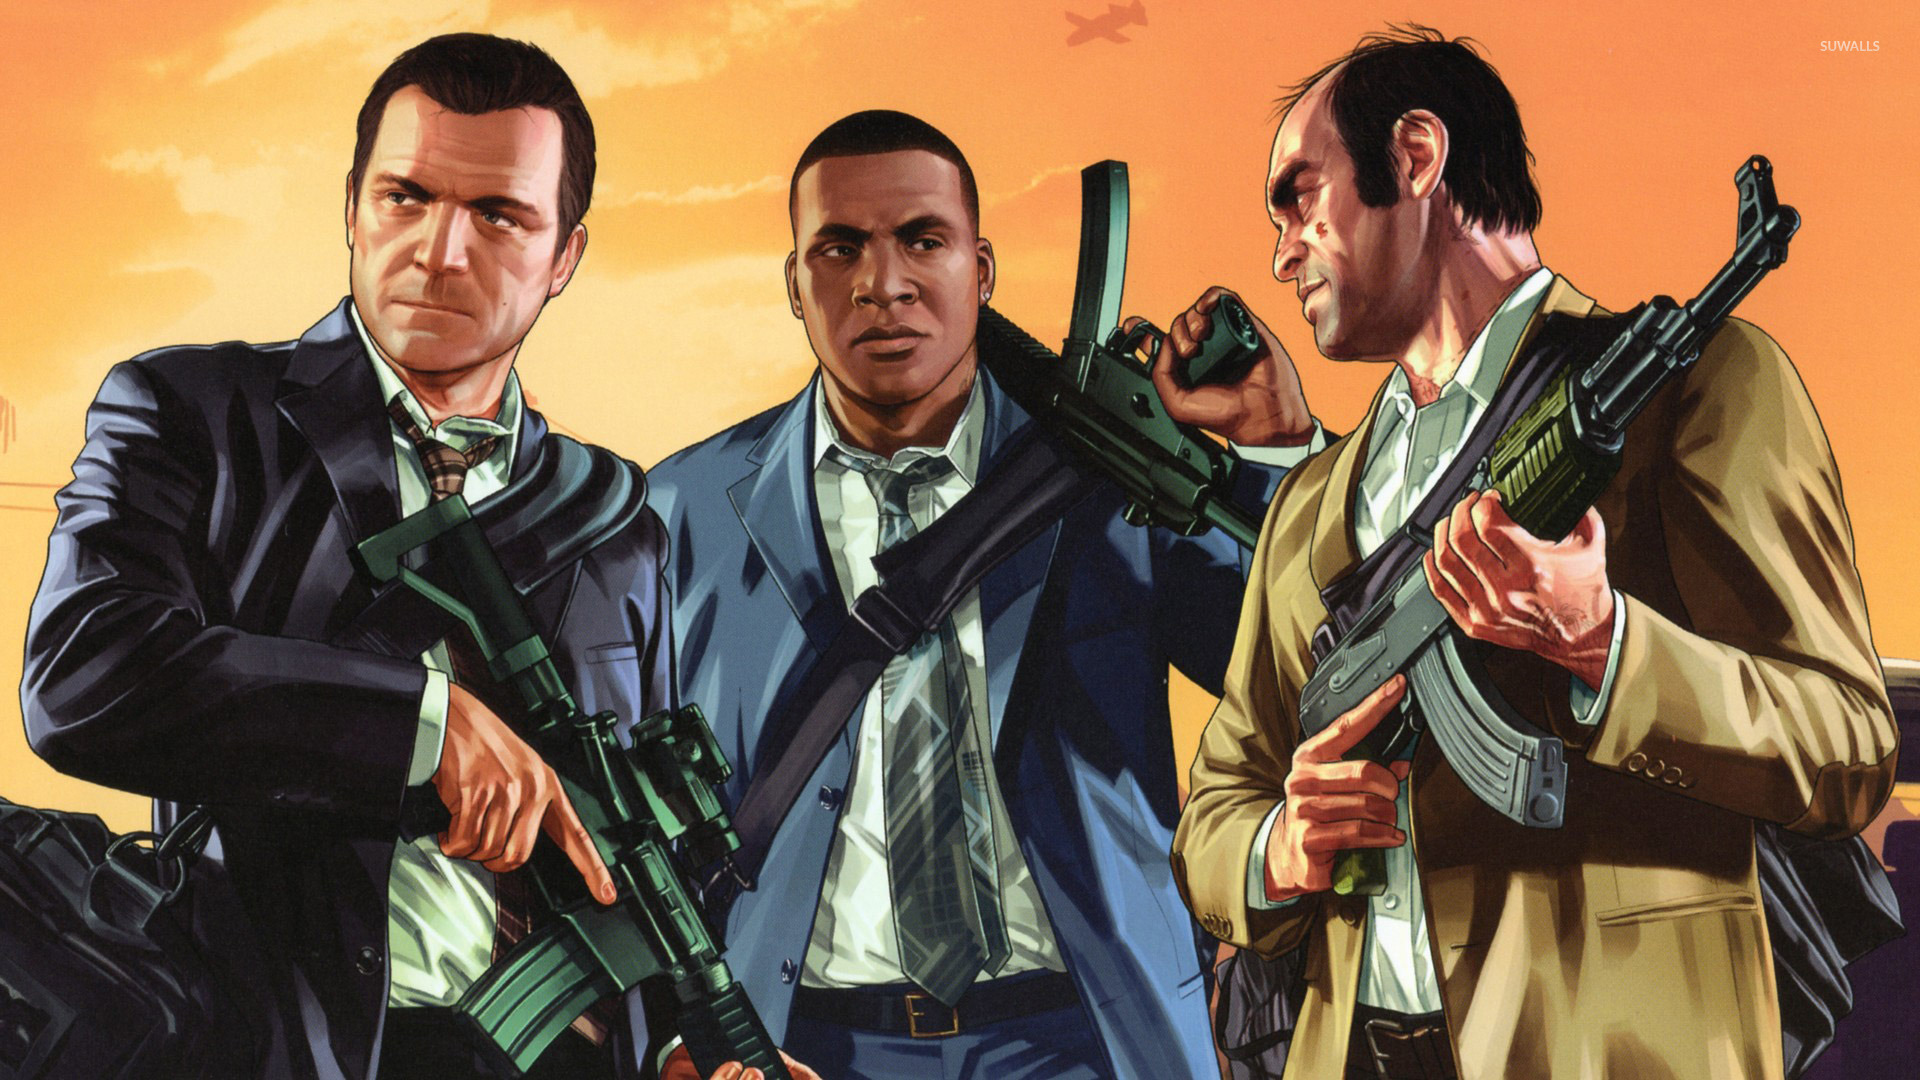 Grand Theft Auto V - HD Wallpaper 